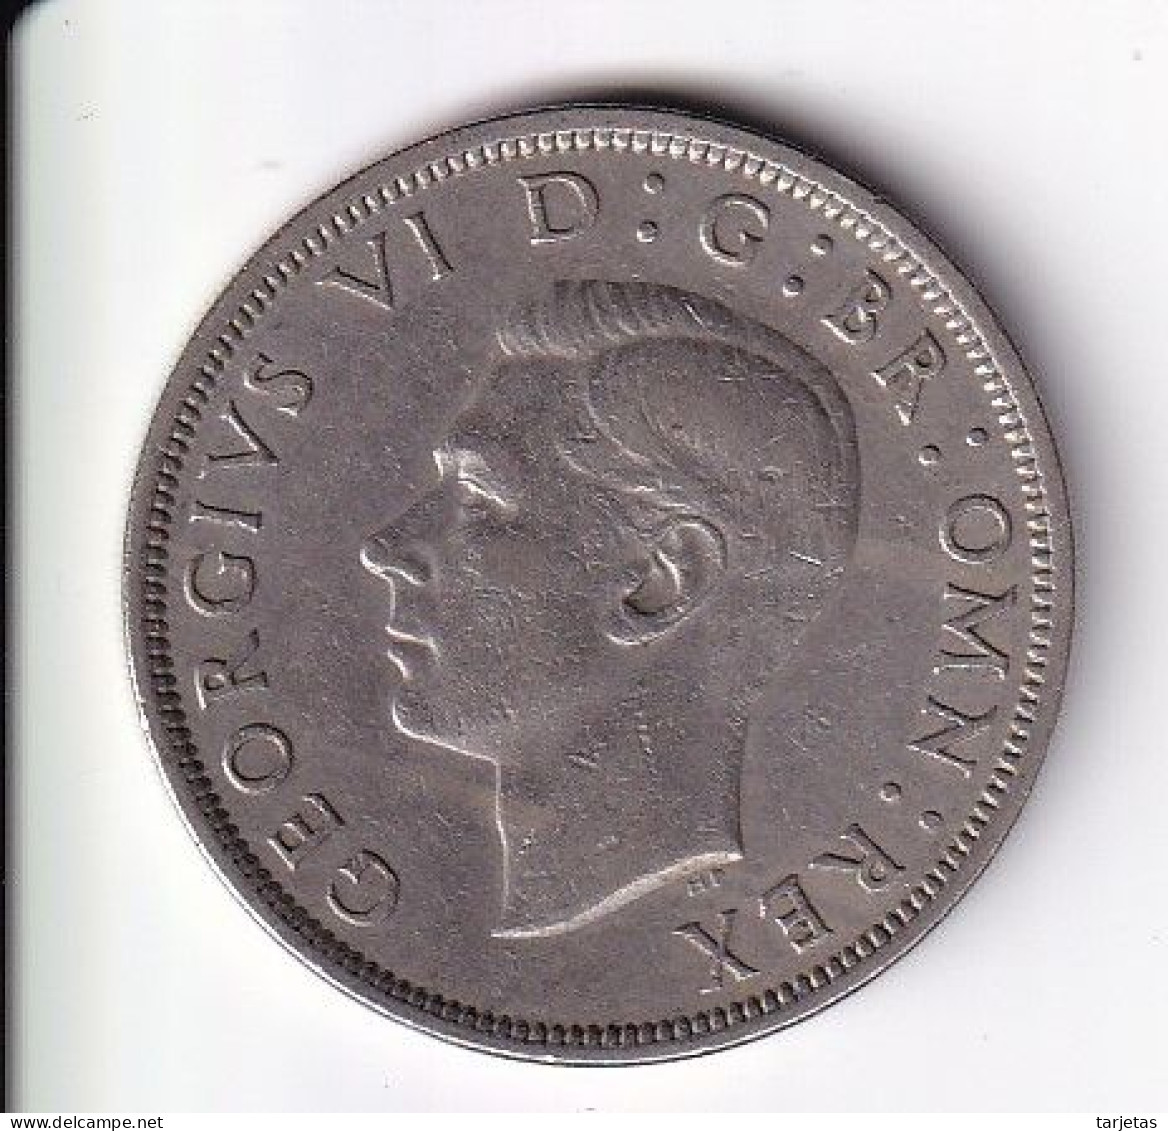 MONEDA DE GRAN BRETAÑA DE 1/2 CROWN DEL AÑO 1951  (COIN) GEORGE VI - K. 1/2 Crown